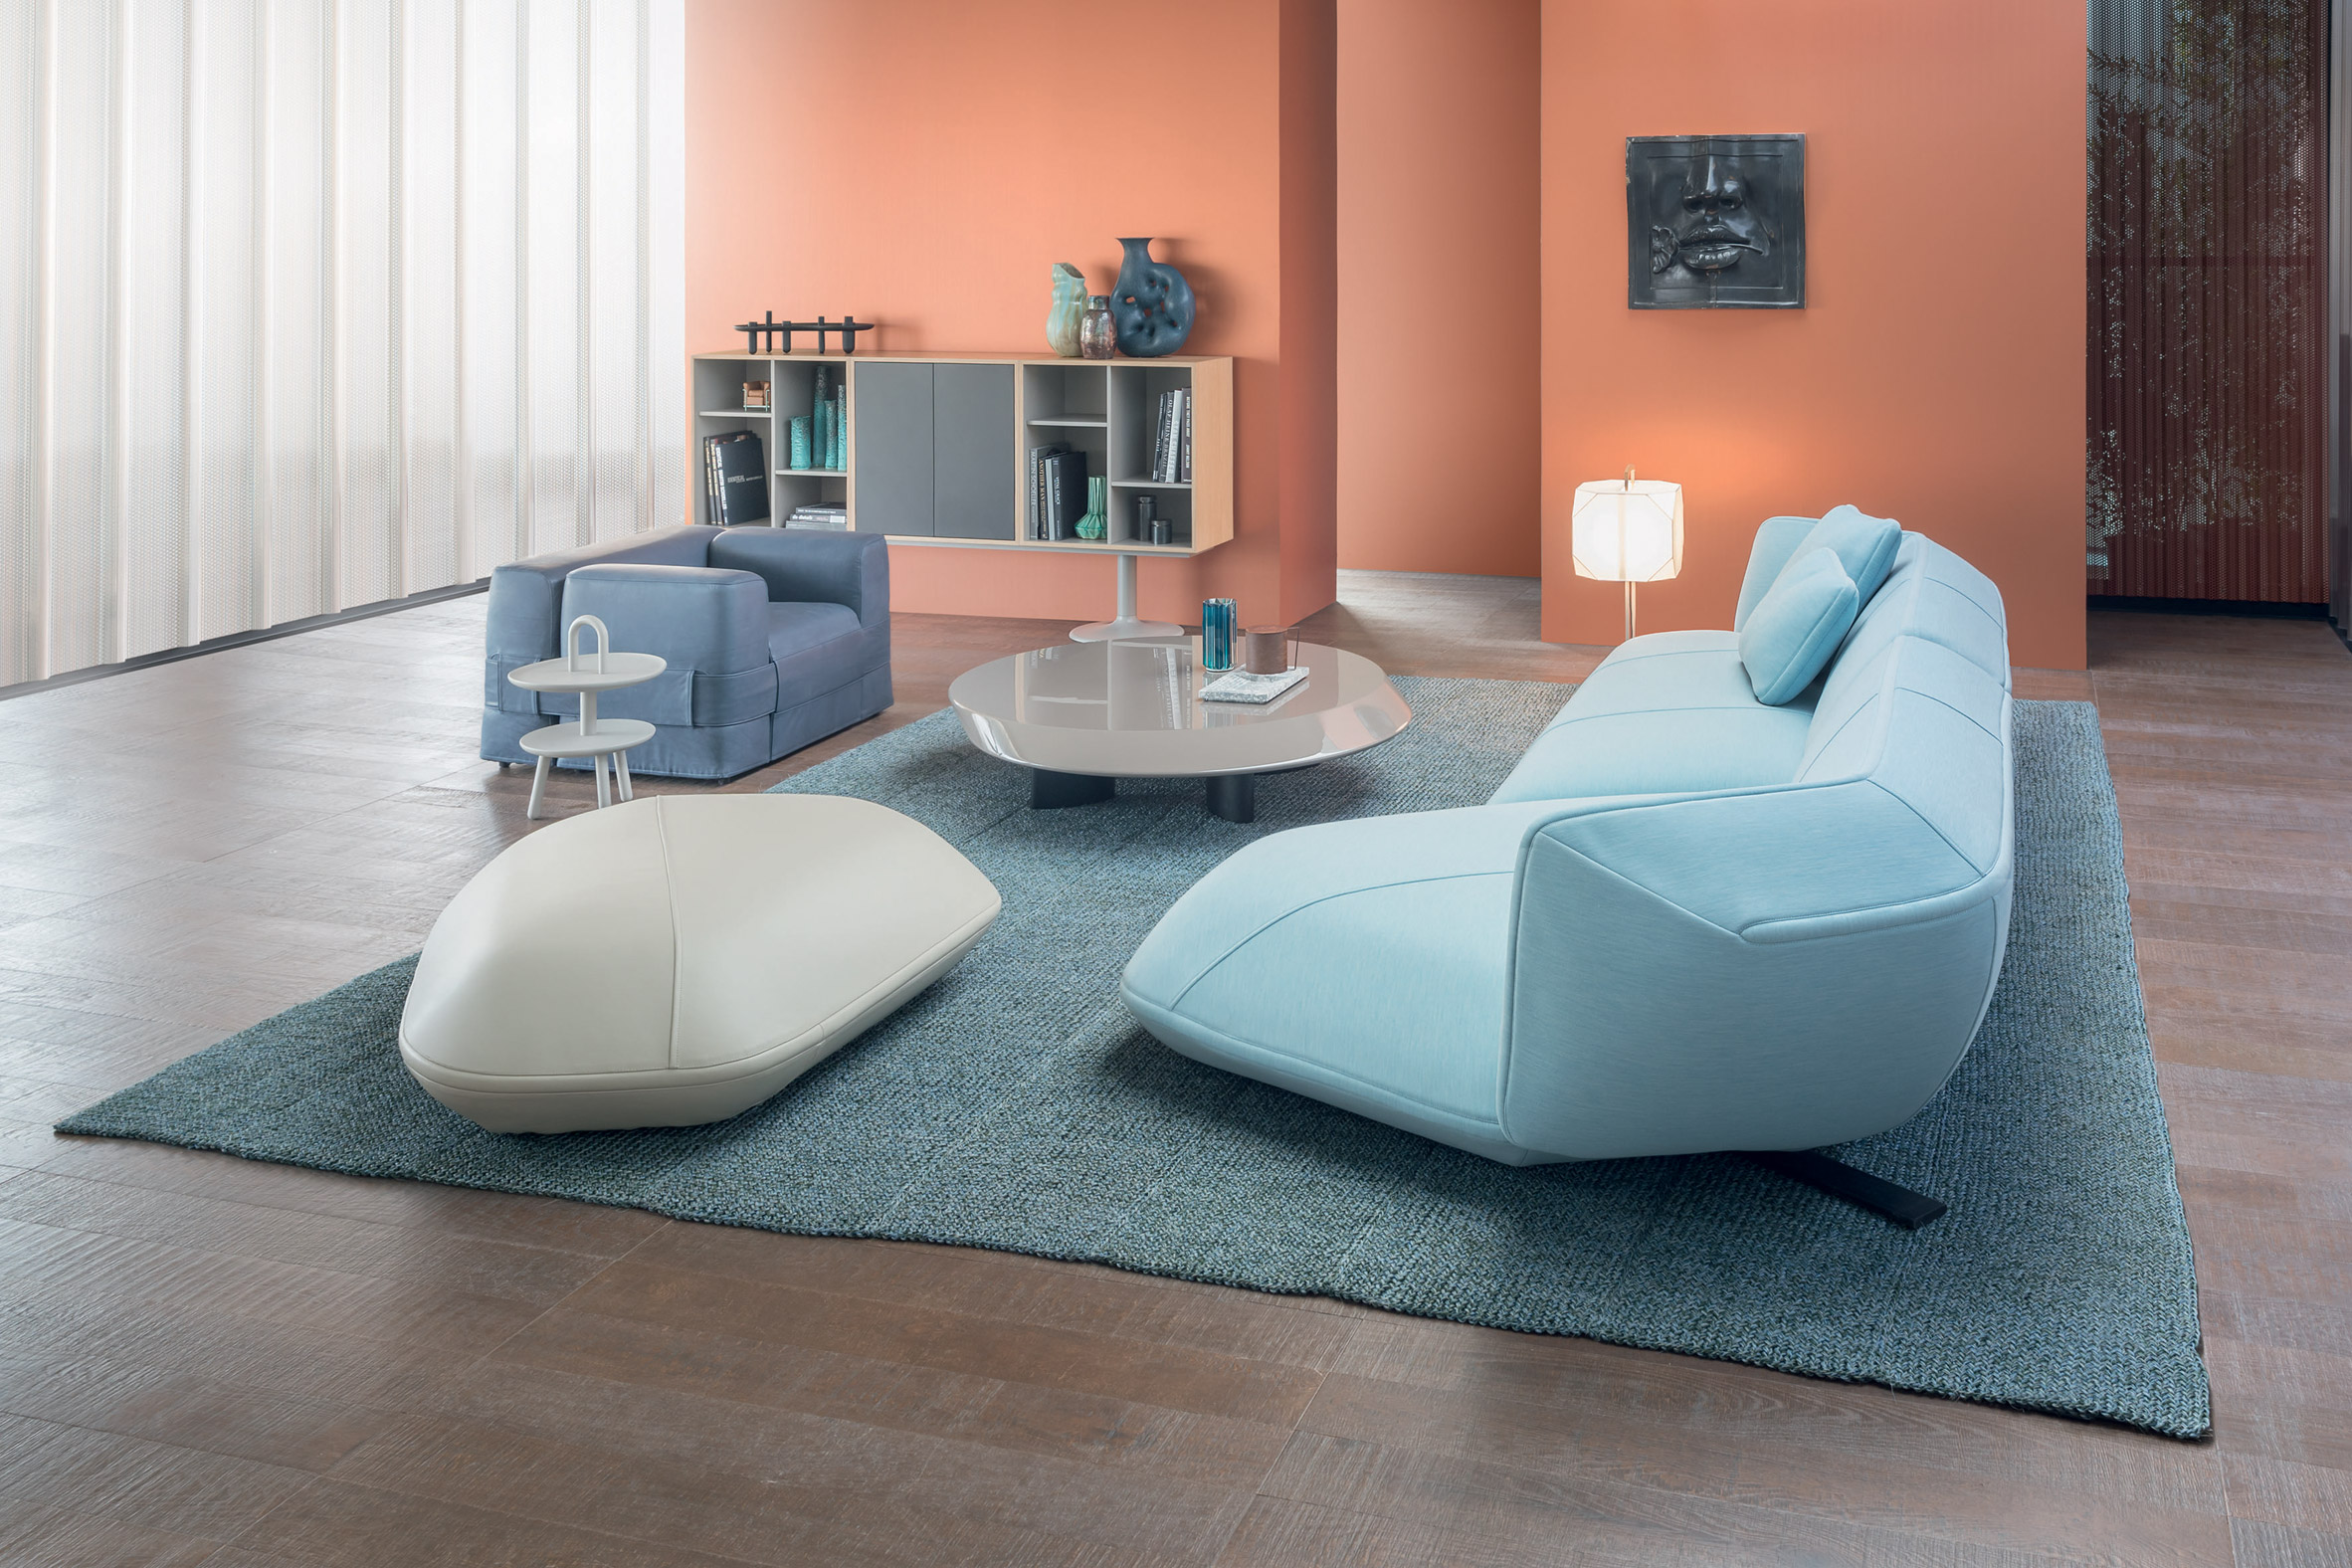 cassina-floe-insel-patricia-urquiola-design-furniture-milan-_dezeen_2364_col_5